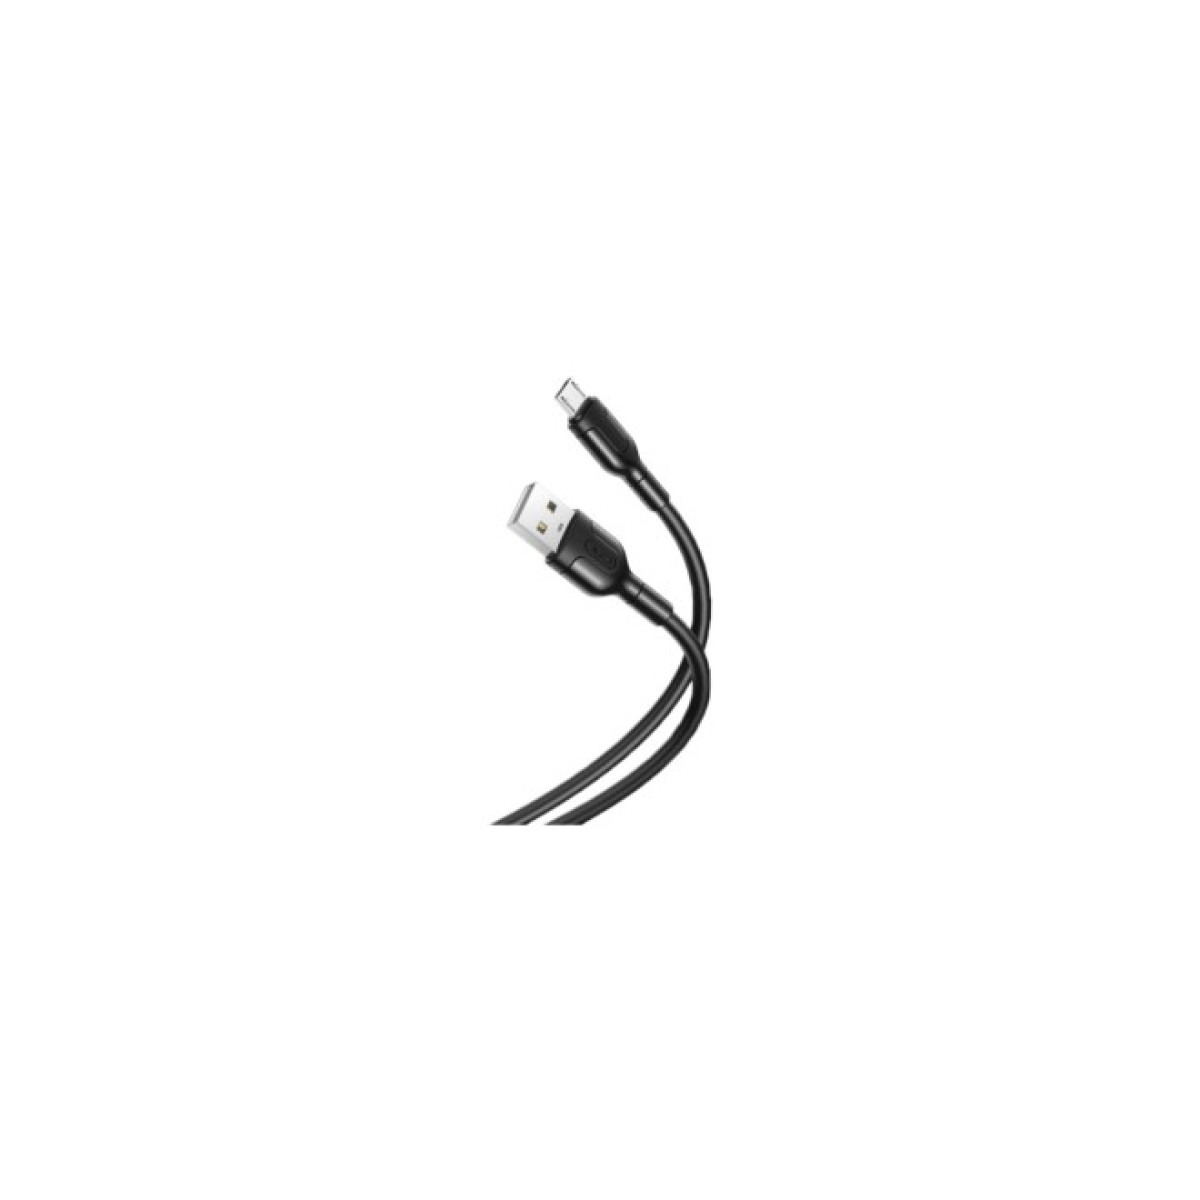 Дата кабель USB 2.0 AM to Micro 5P 1.0m NB212 2.1A Black XO (XO-NB212m-BK) 256_256.jpg